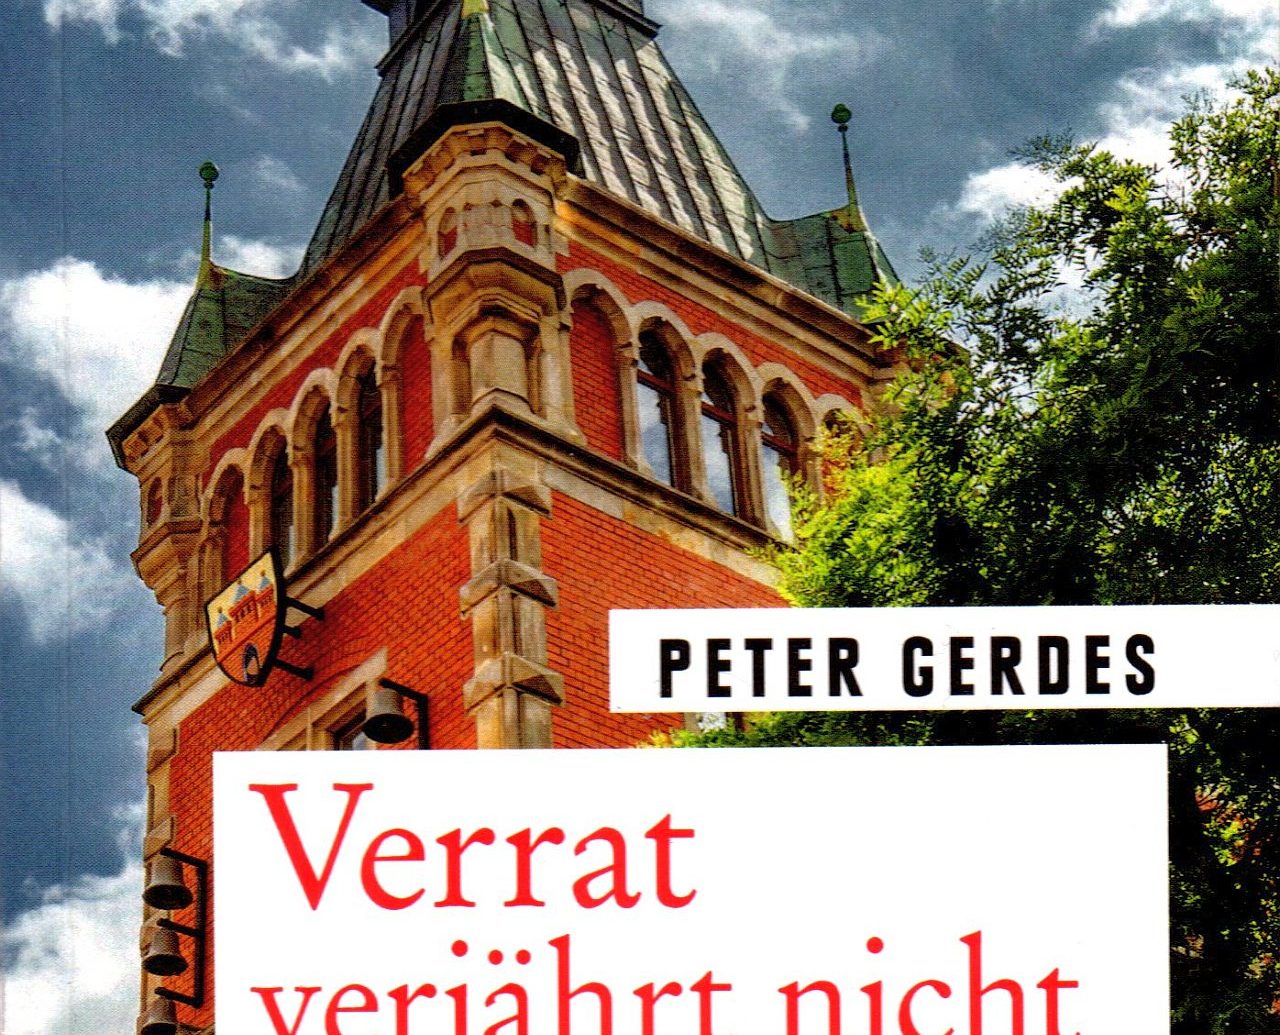 Oldenburg Krimi Peter Gerdes Cover Verrat verjährt nicht